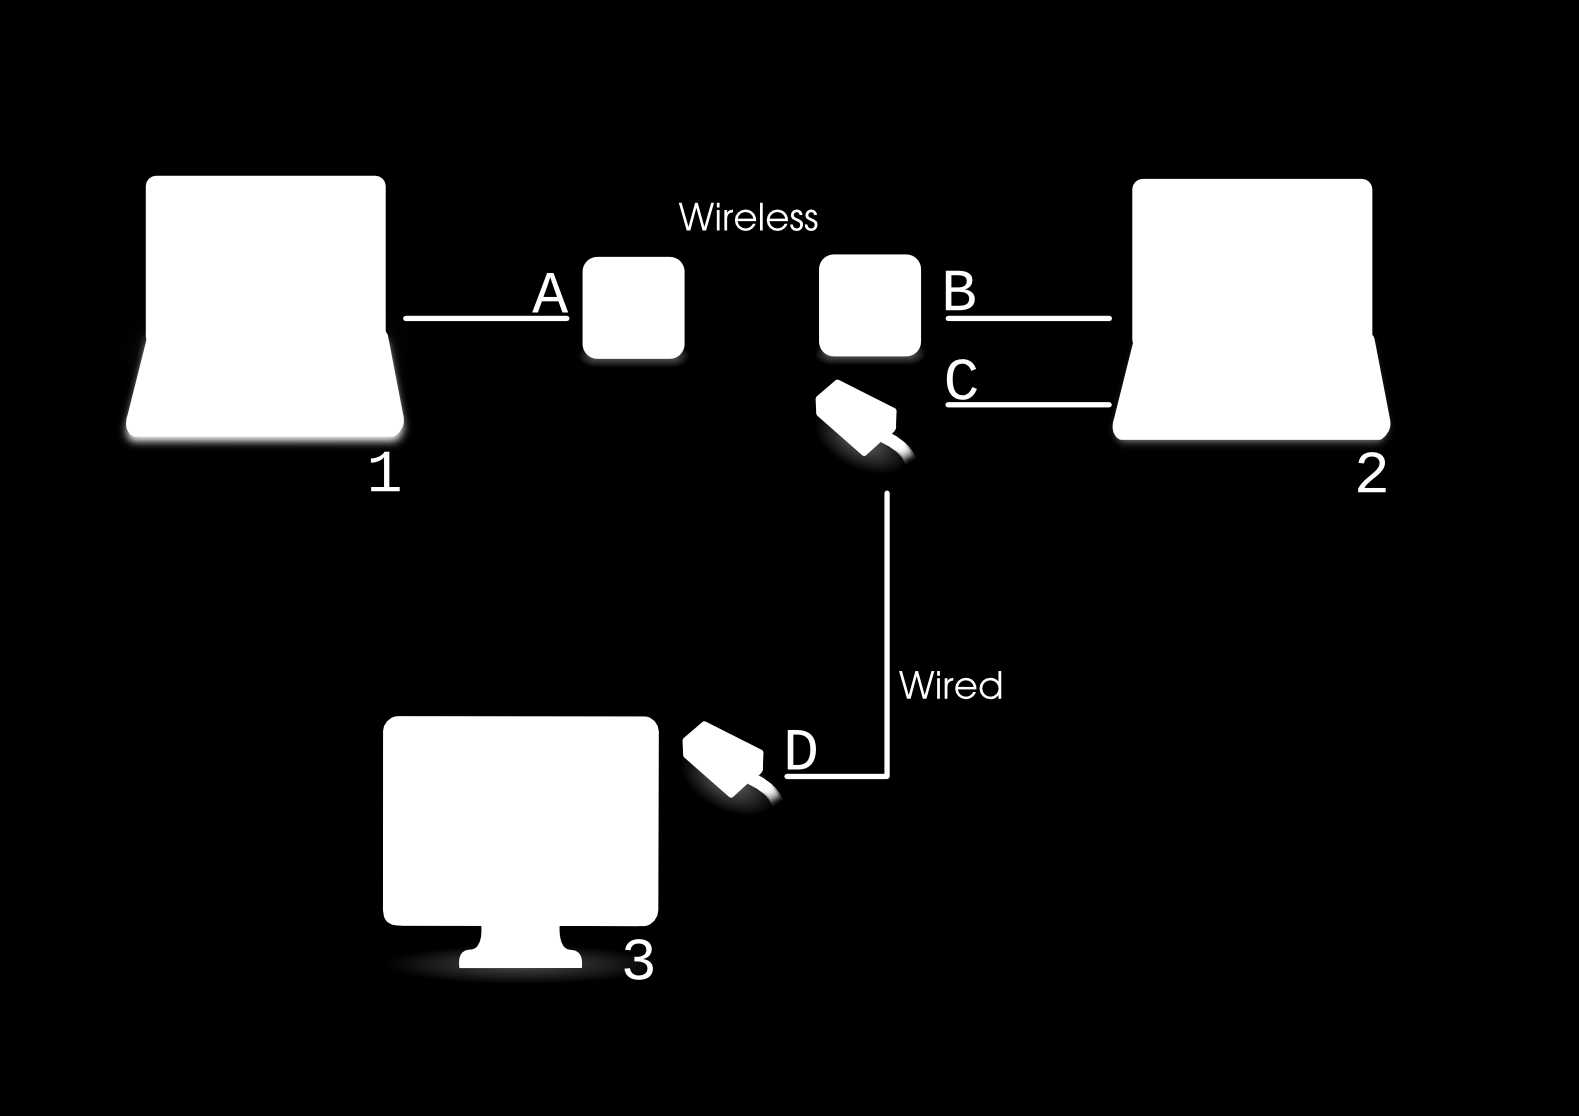 Abbildung 1. Automatische IP-Konfiguration. In diesem Schaubild besitzt jede Netzwerkschnittstelle A-D eine einmalige IP-Adresse für jede Wireless oder kabelgebundene Verbindung.